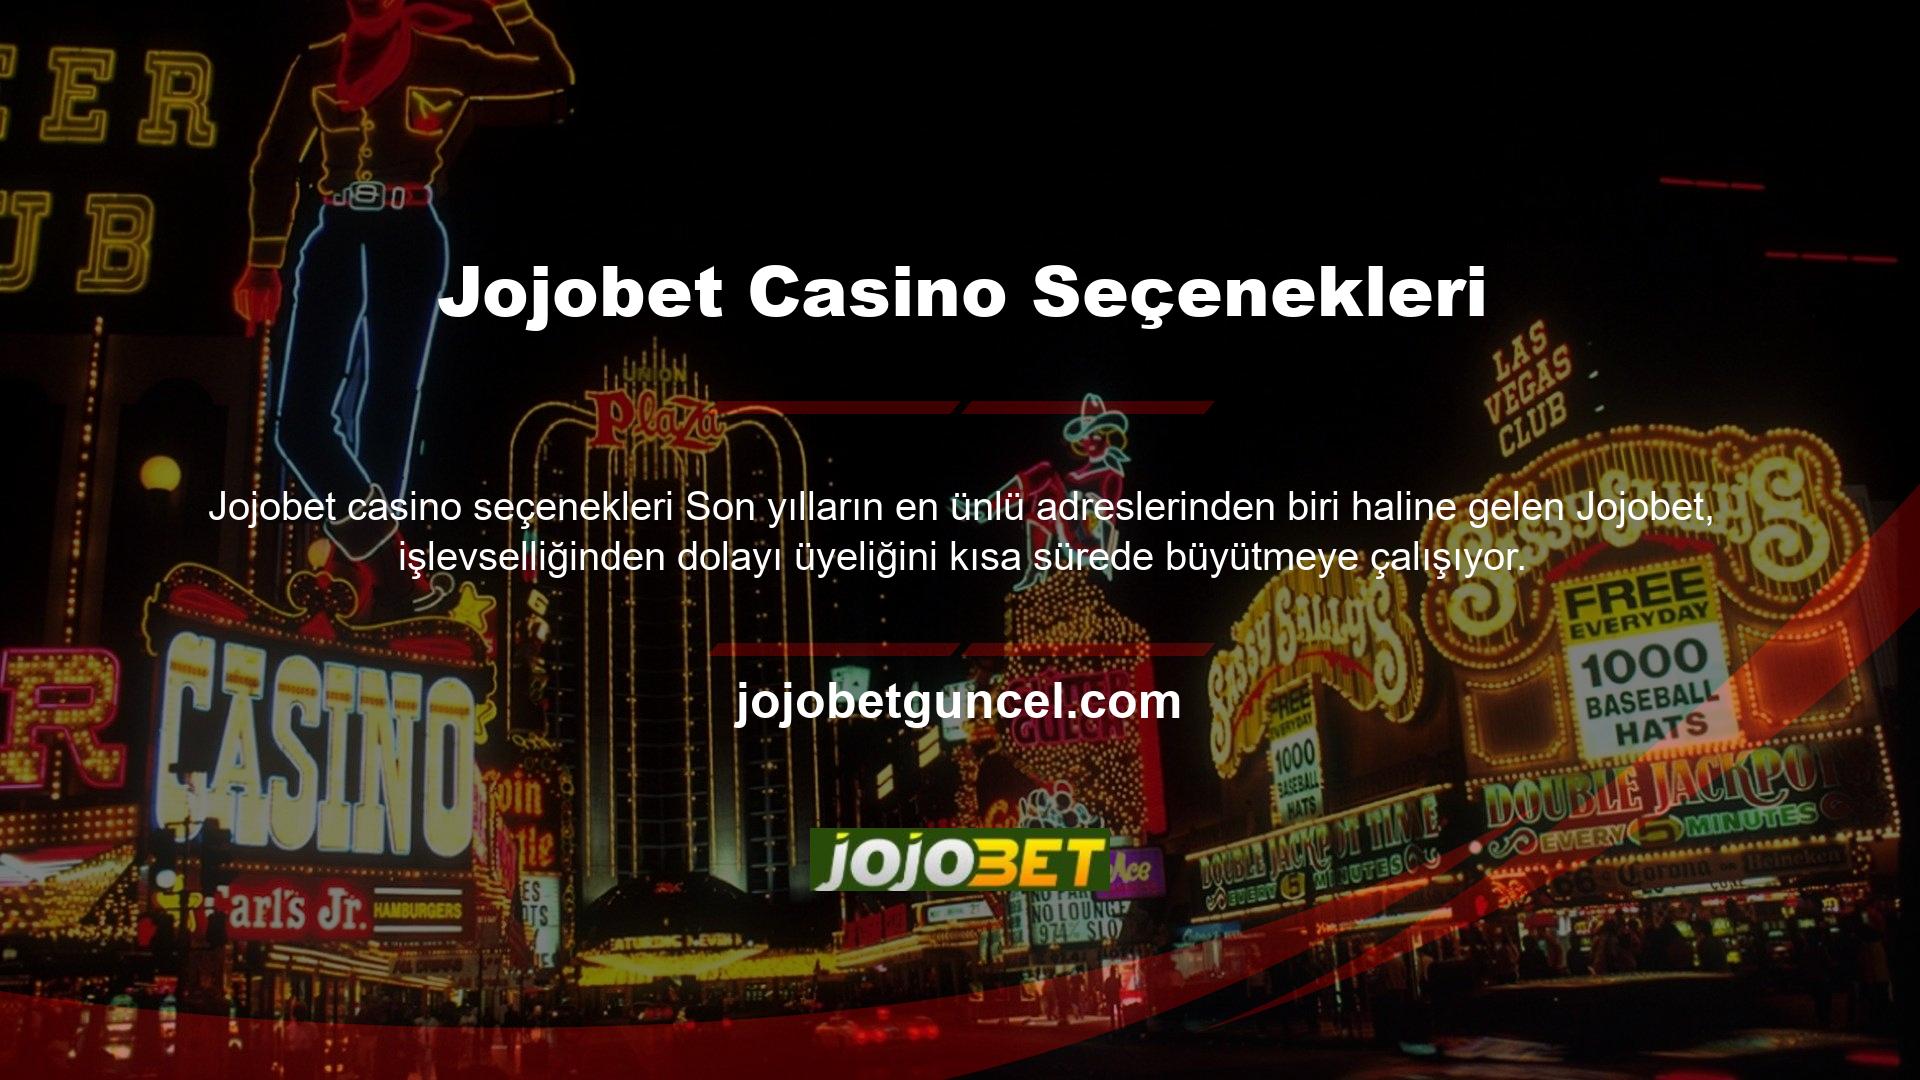 Jojobet, spor ve canlı bahis ve diğer casino seçenekleri, canlı oyunlar, video oyunları, poker, canlı Jojobet casino seçenekleri ve casino seçenekleri sunar